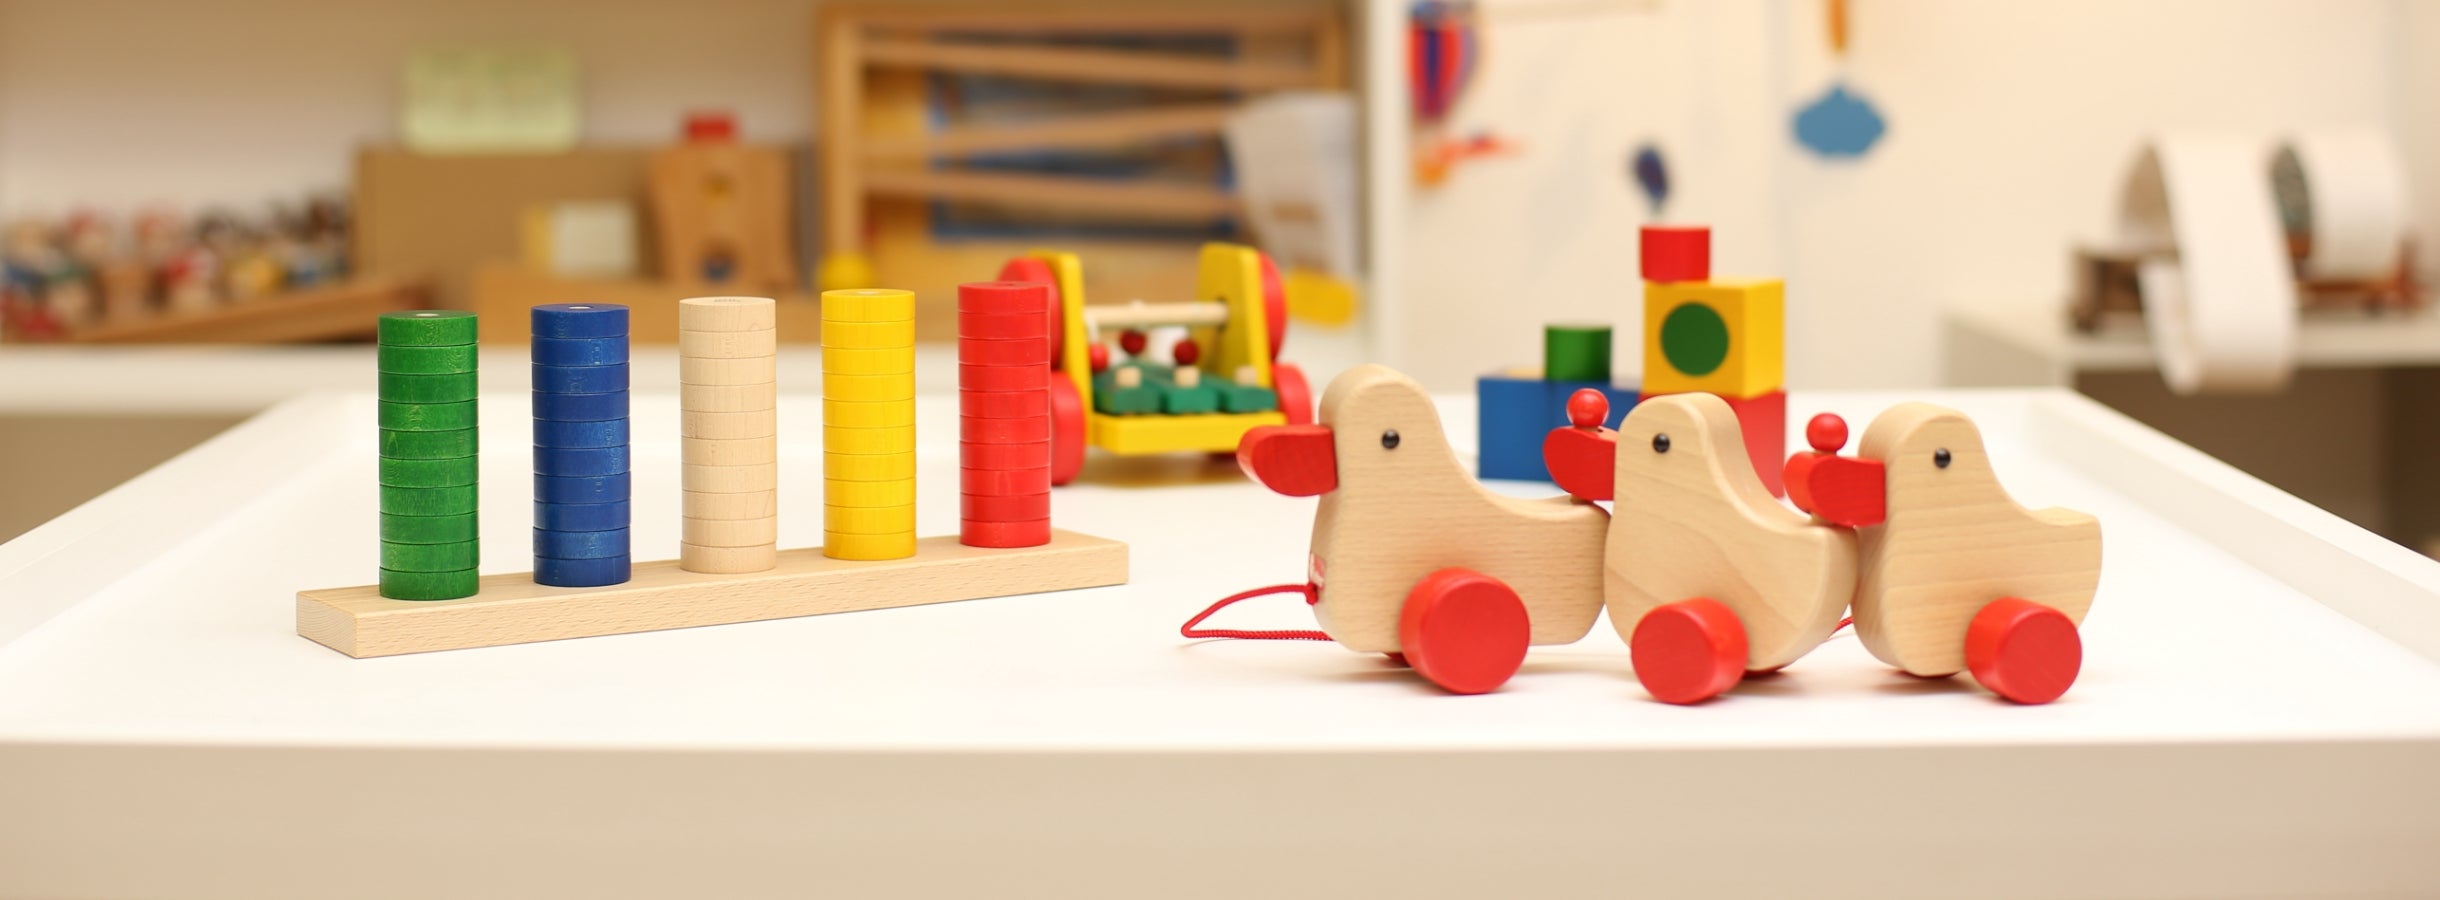 つみきや | 木のおもちゃ・ゲーム・雑貨の店舗&通販サイト